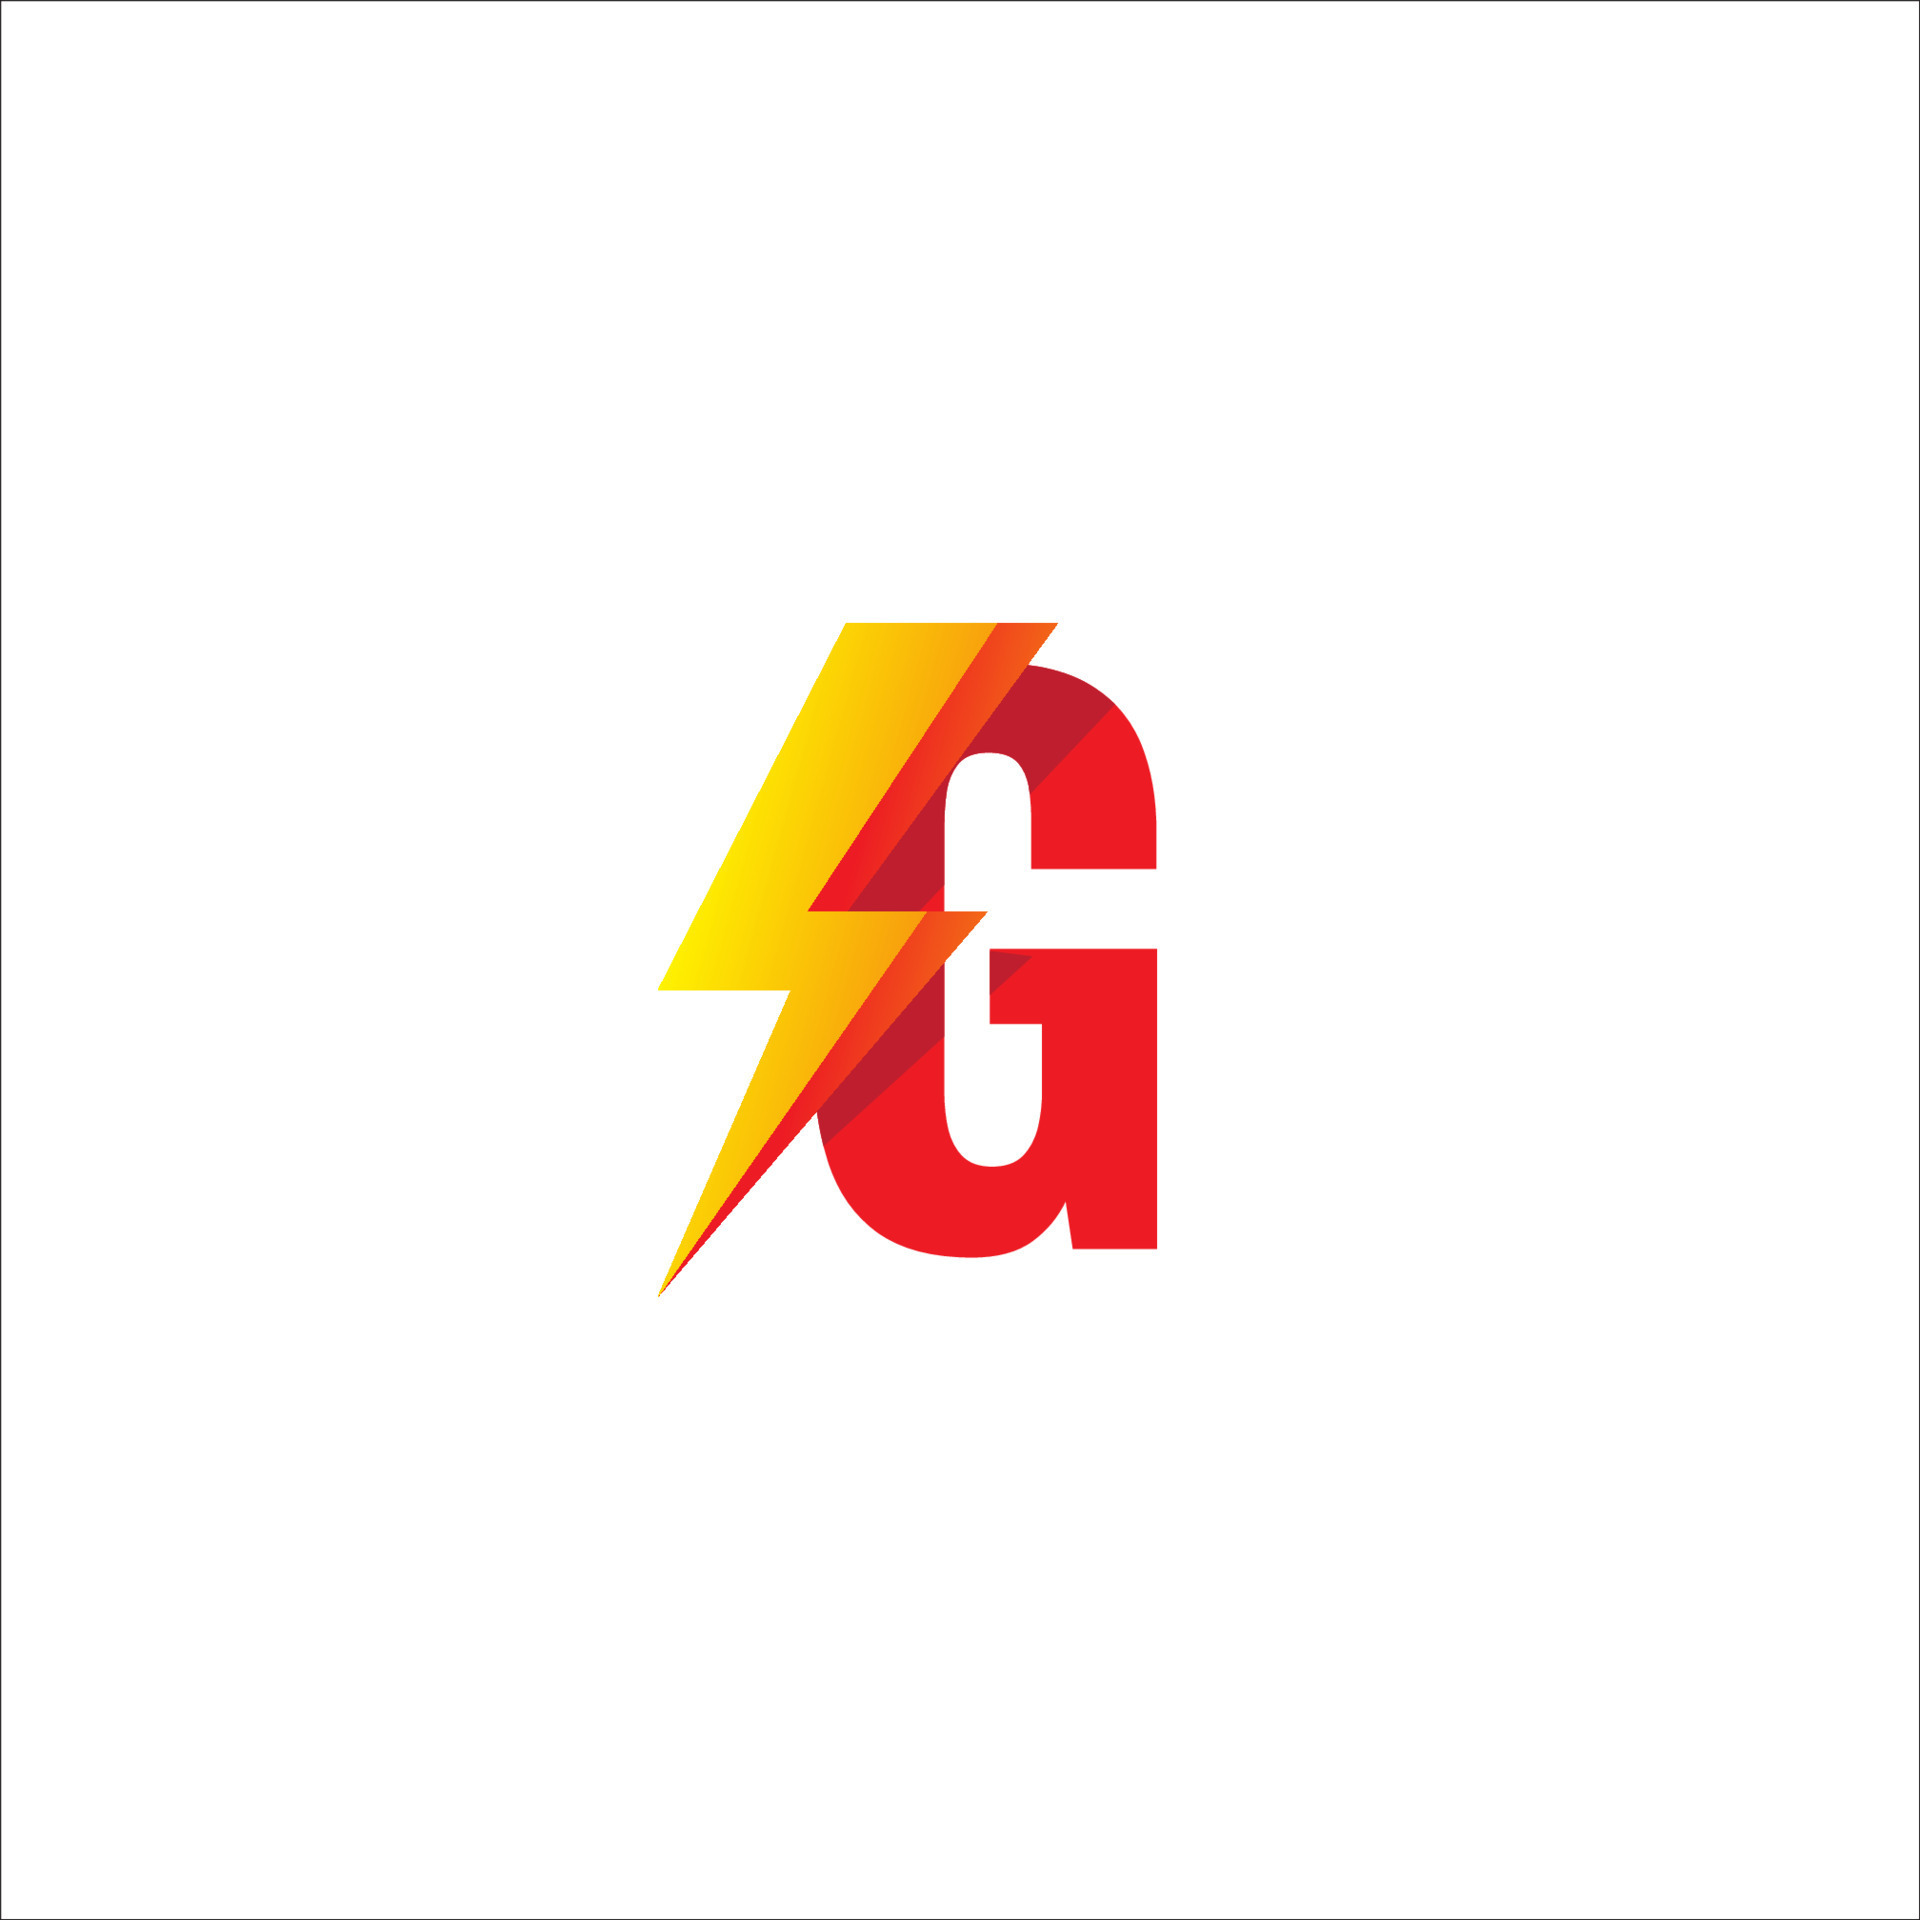 Với hình ảnh chiếc logo chữ G độc đáo này, bạn sẽ được khám phá nhiều điều thú vị về ý nghĩa và cách tạo ra một logo phù hợp với thương hiệu của bạn. Hãy cùng tìm hiểu thêm thông tin về logo độc đáo này.